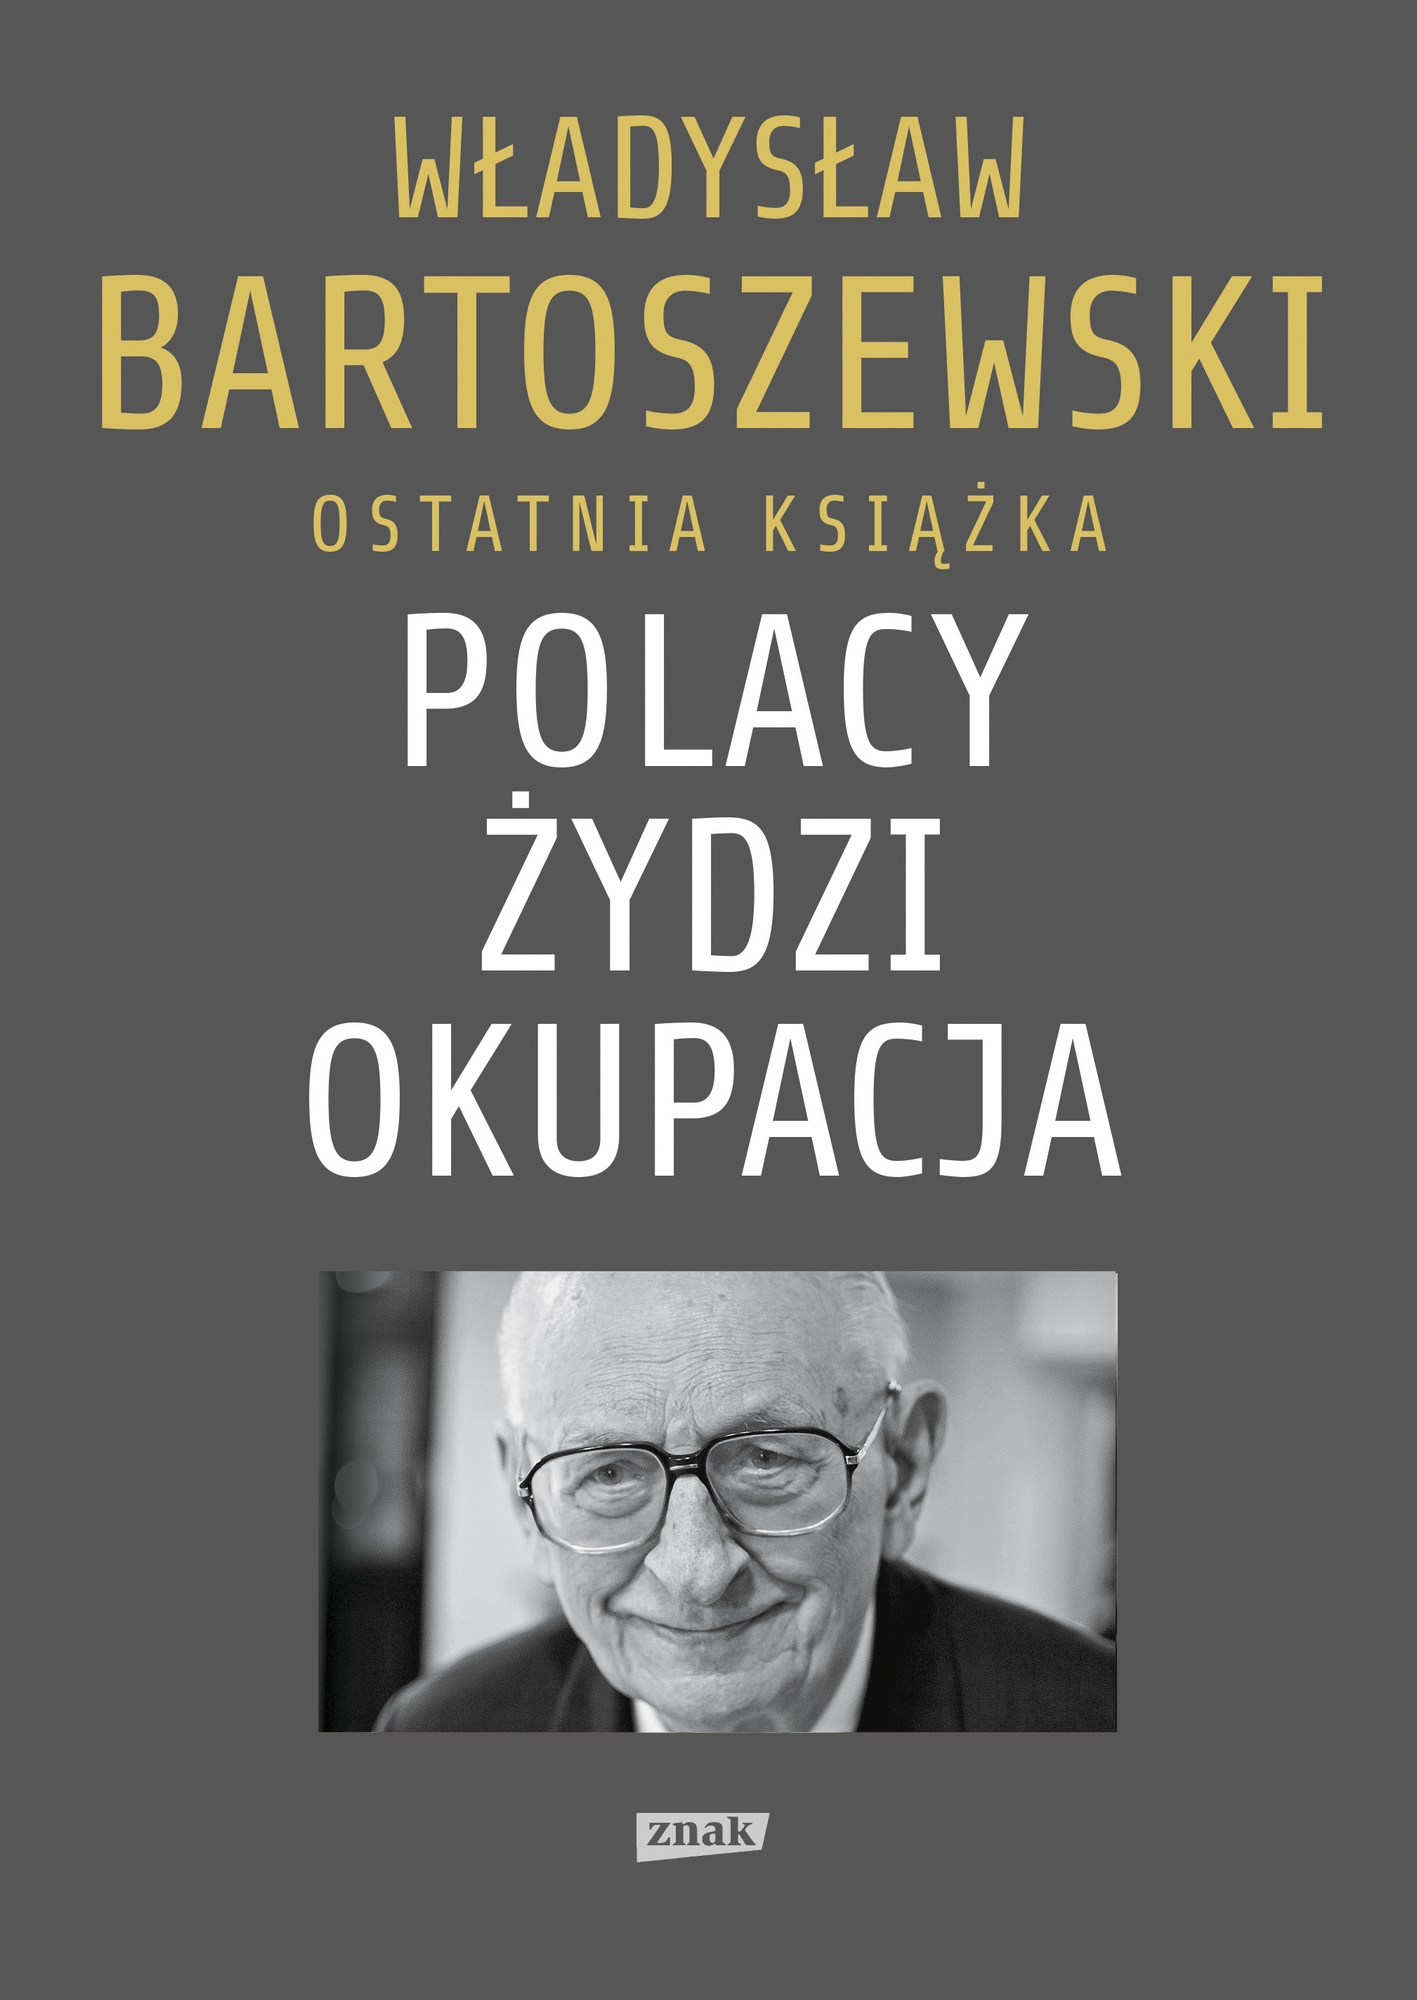 Władysław Bartoszewski, „Polacy. Żydzi. Okupacja. Fakty, postawy, refleksje” – okładka (źródło: materiały prasowe)